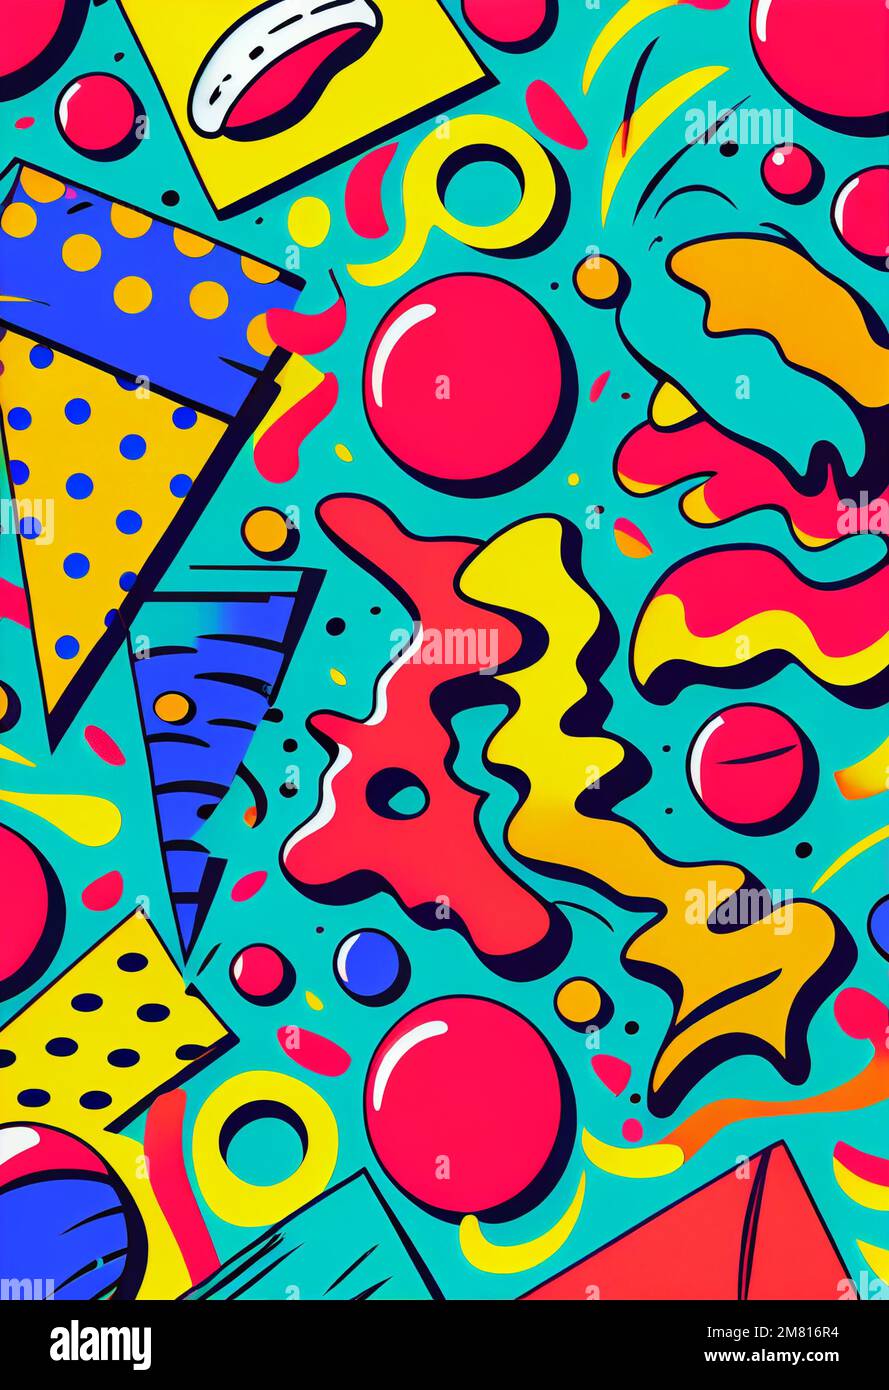 90s pop art pattern background illustration Stock Photo - Alamy